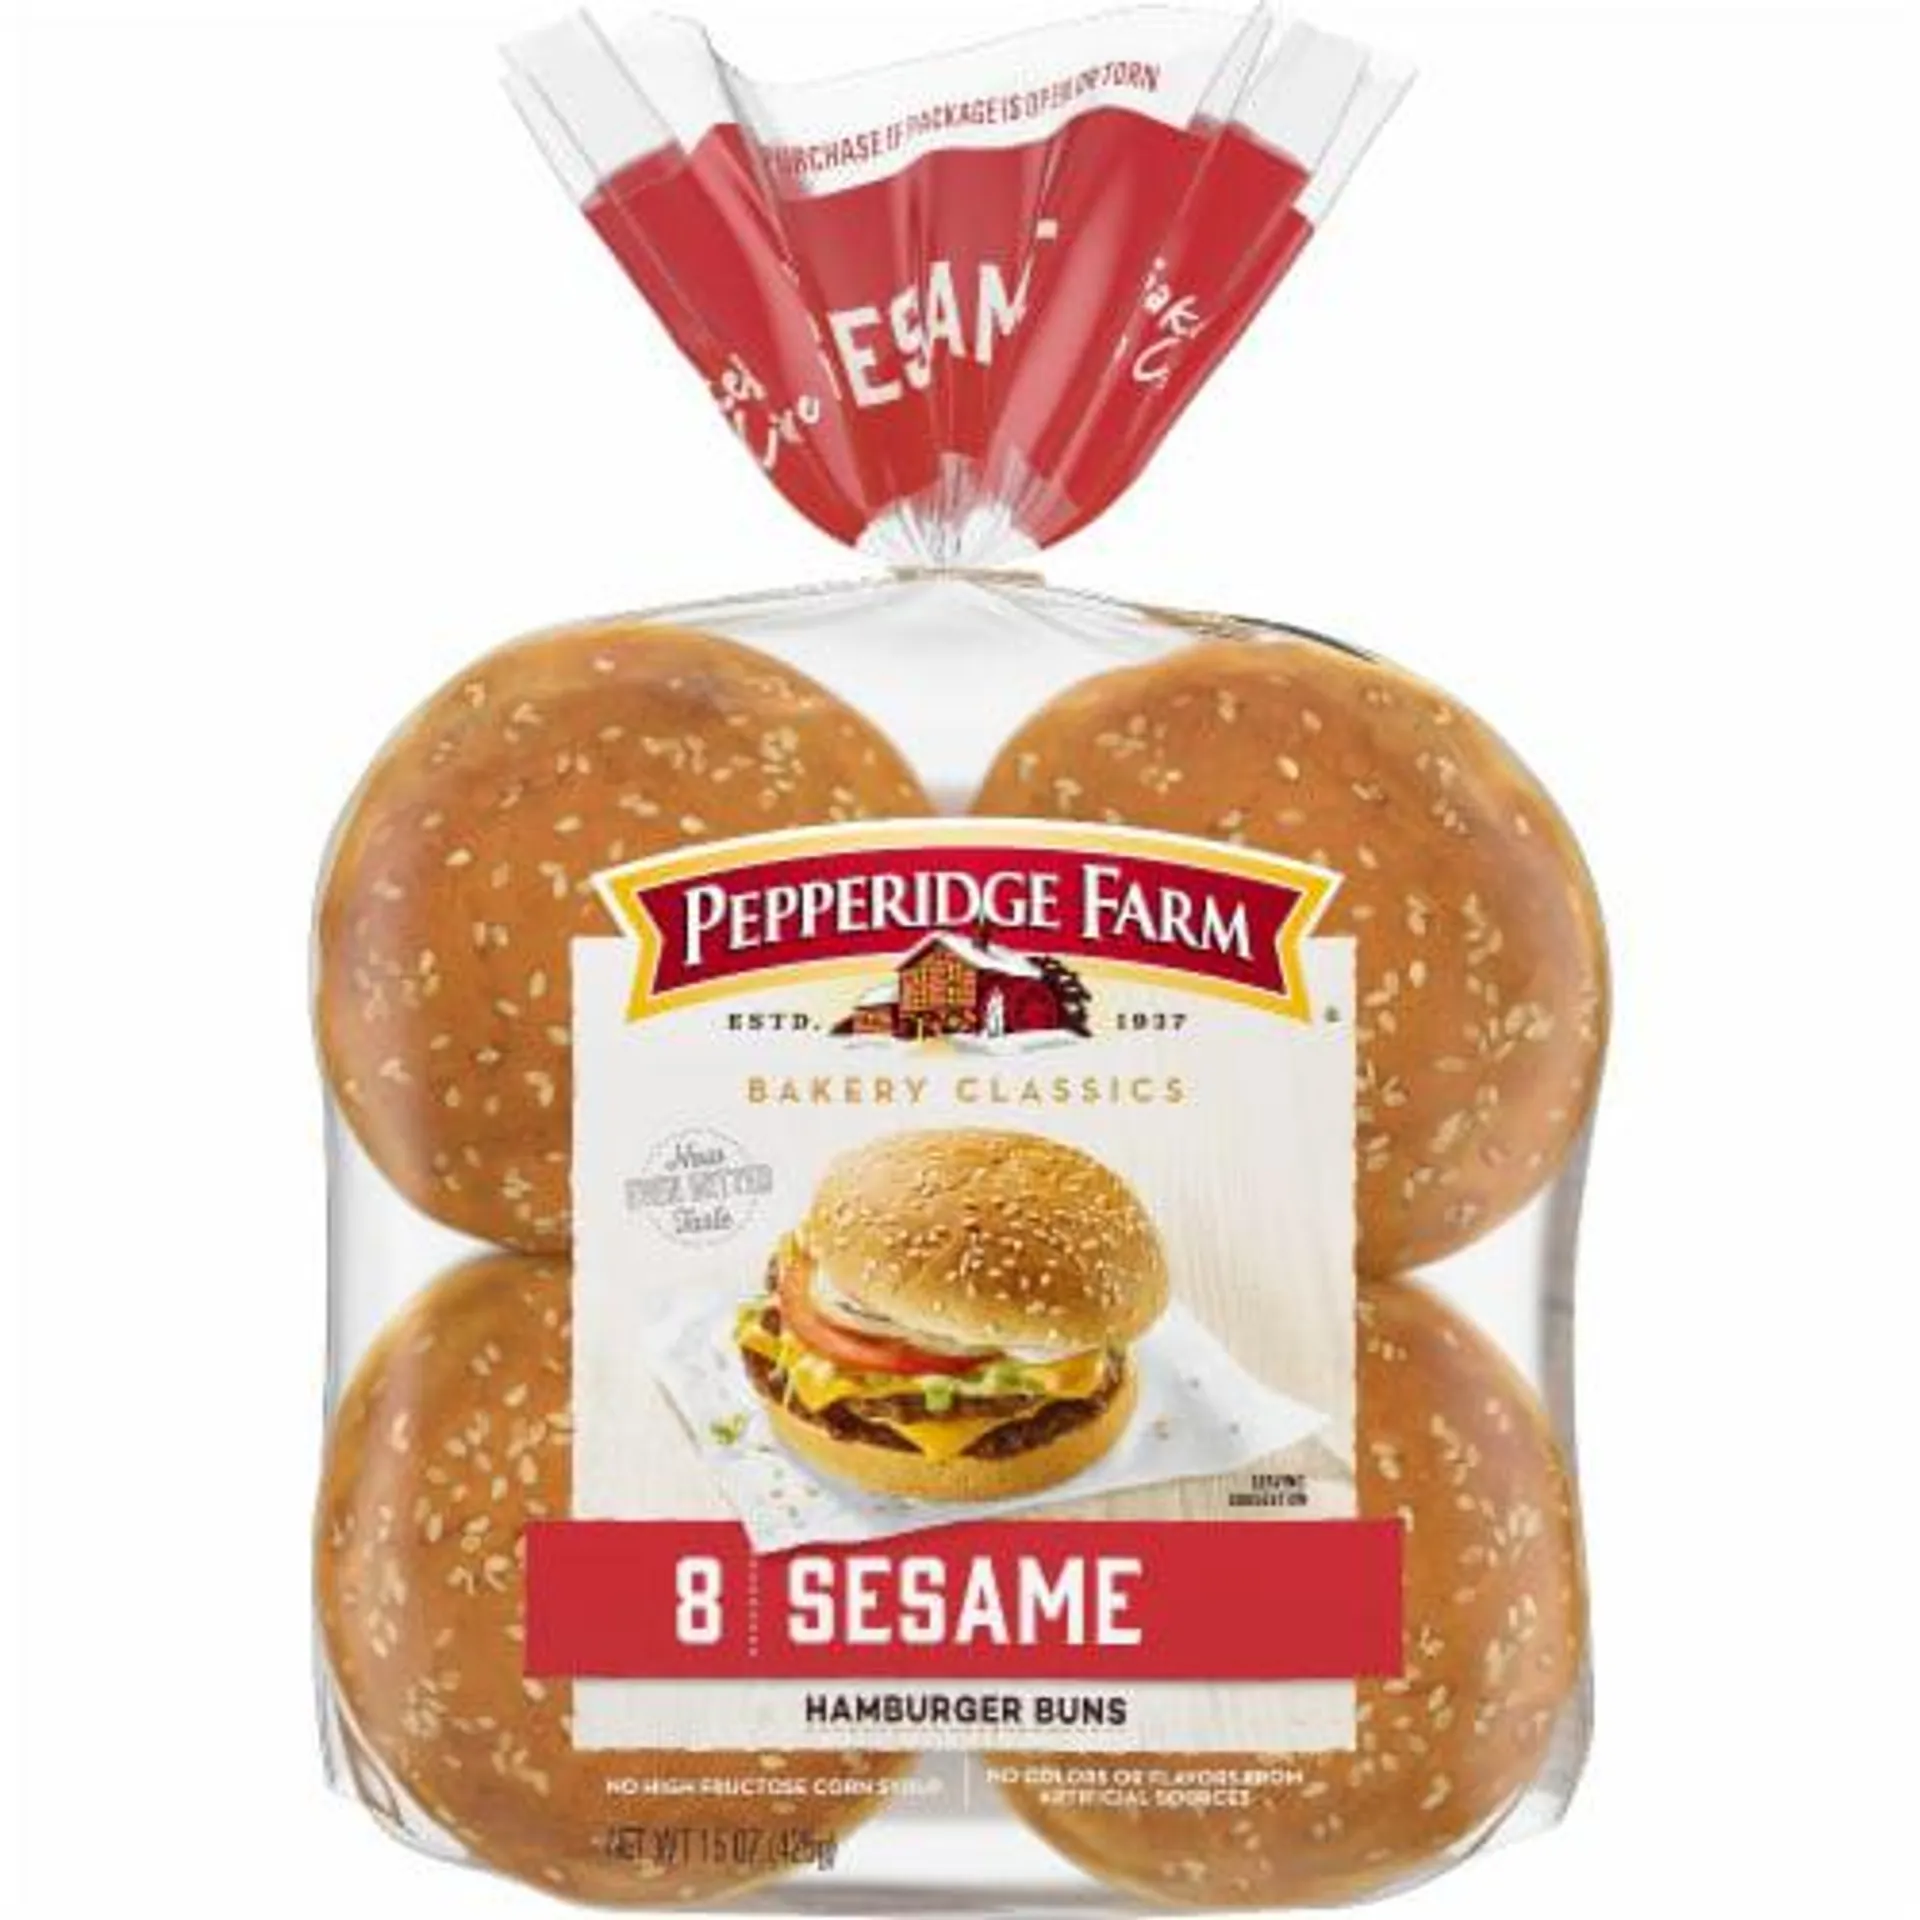 Pepperidge Farm® Bakery Classics Sesame Topped Hamburger Buns